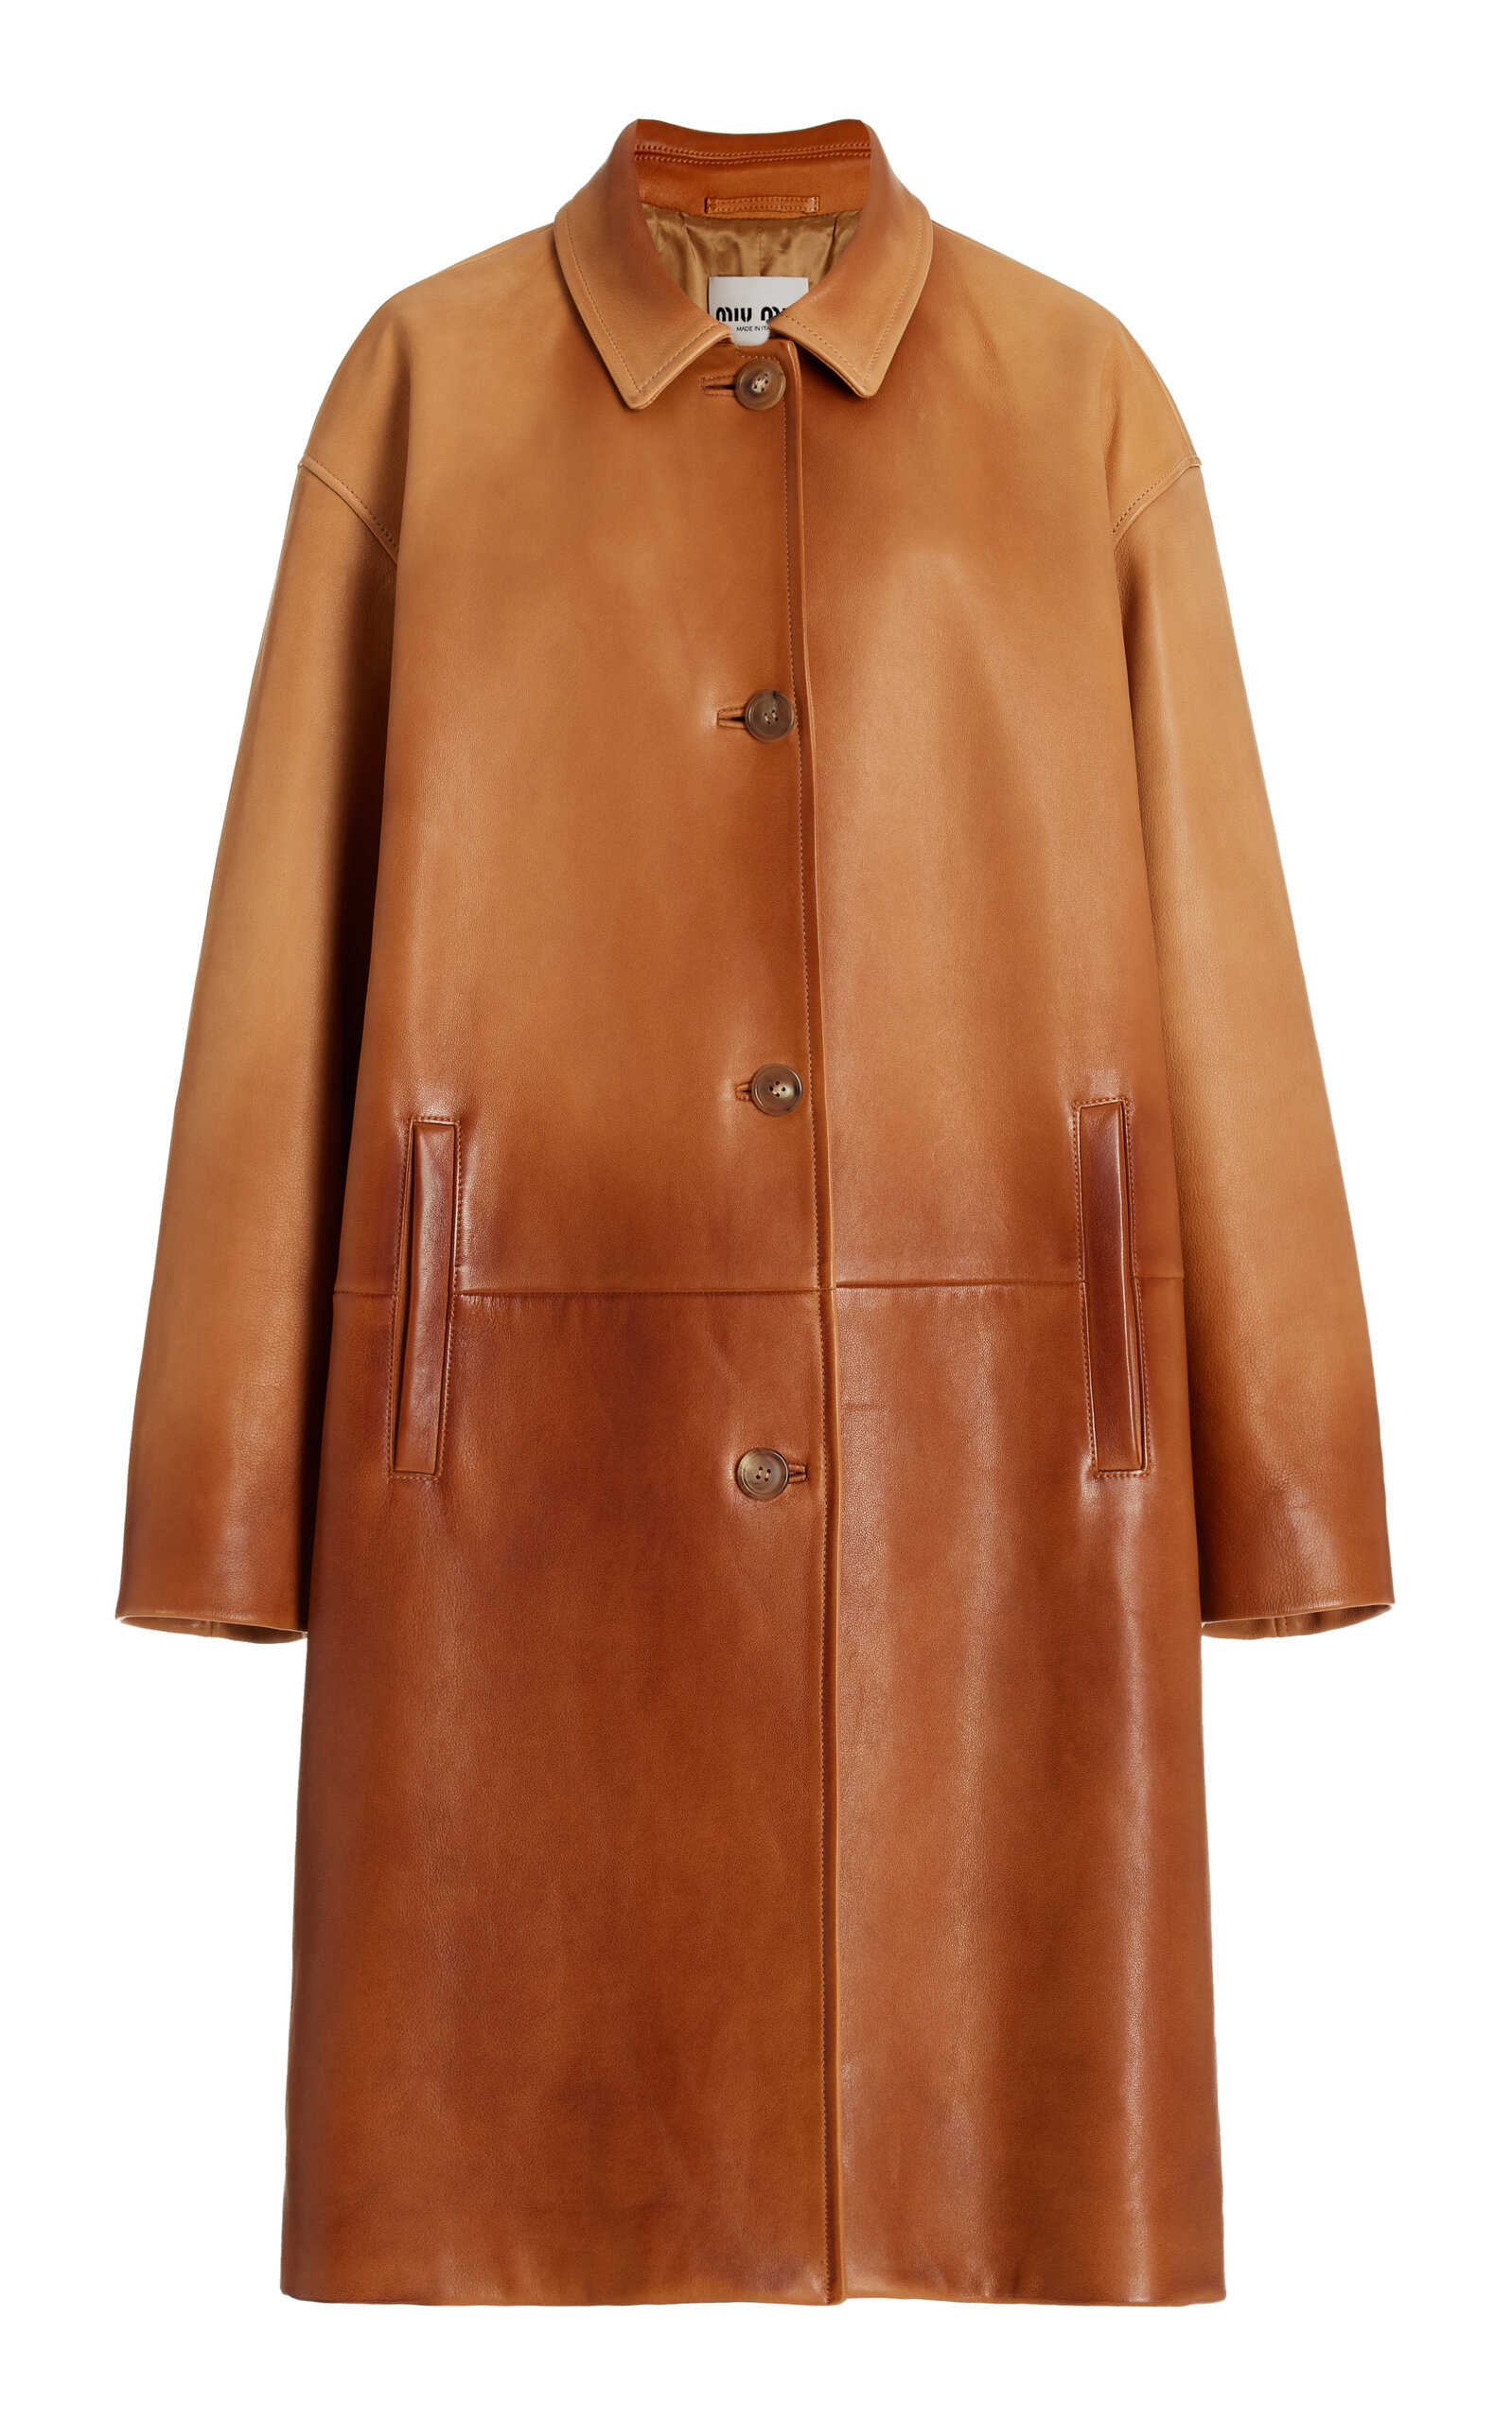 Miu Miu Nappa Leather Coat In Brown